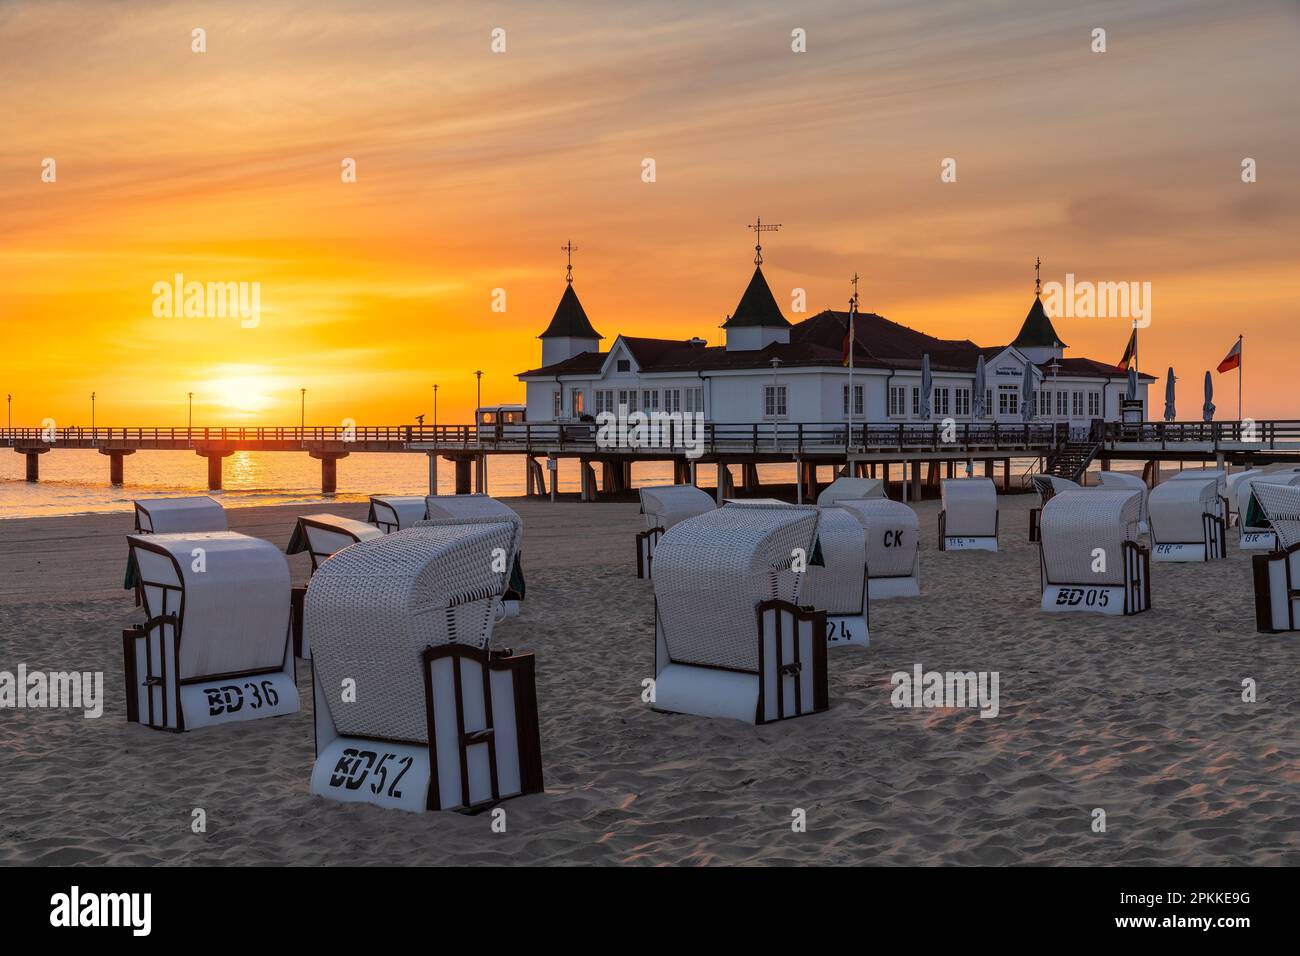 Pier und Liegestühle am Strand von Ahlbeck, Usedom, Ostsee, Mecklenburg-Vorpommern, Deutschland, Europa Stockfoto